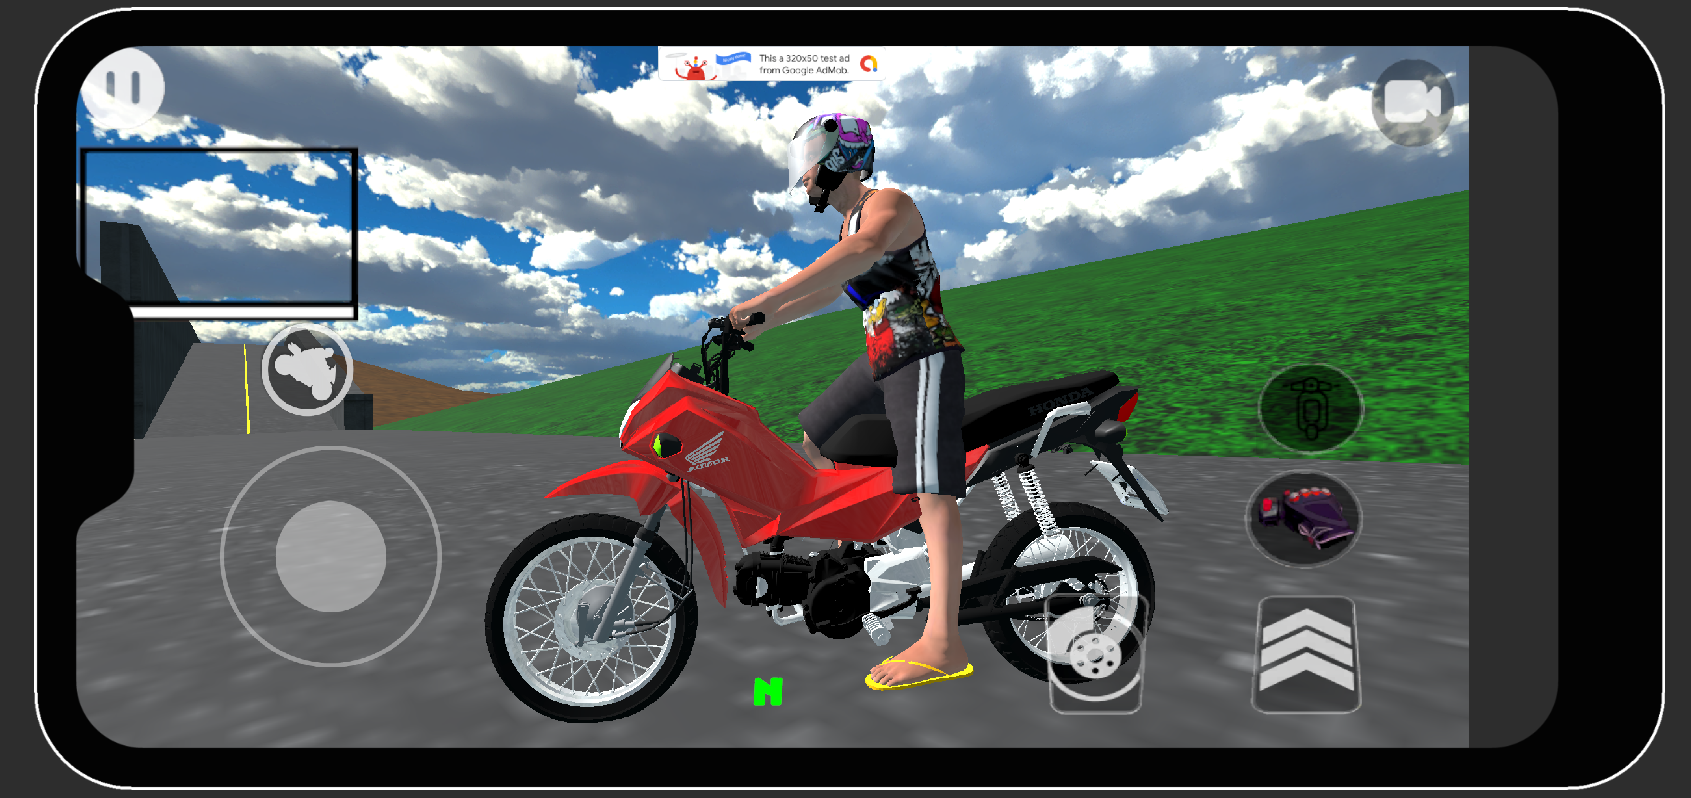 Elite Mx Motos Grau mobile android iOS apk download for free-TapTap